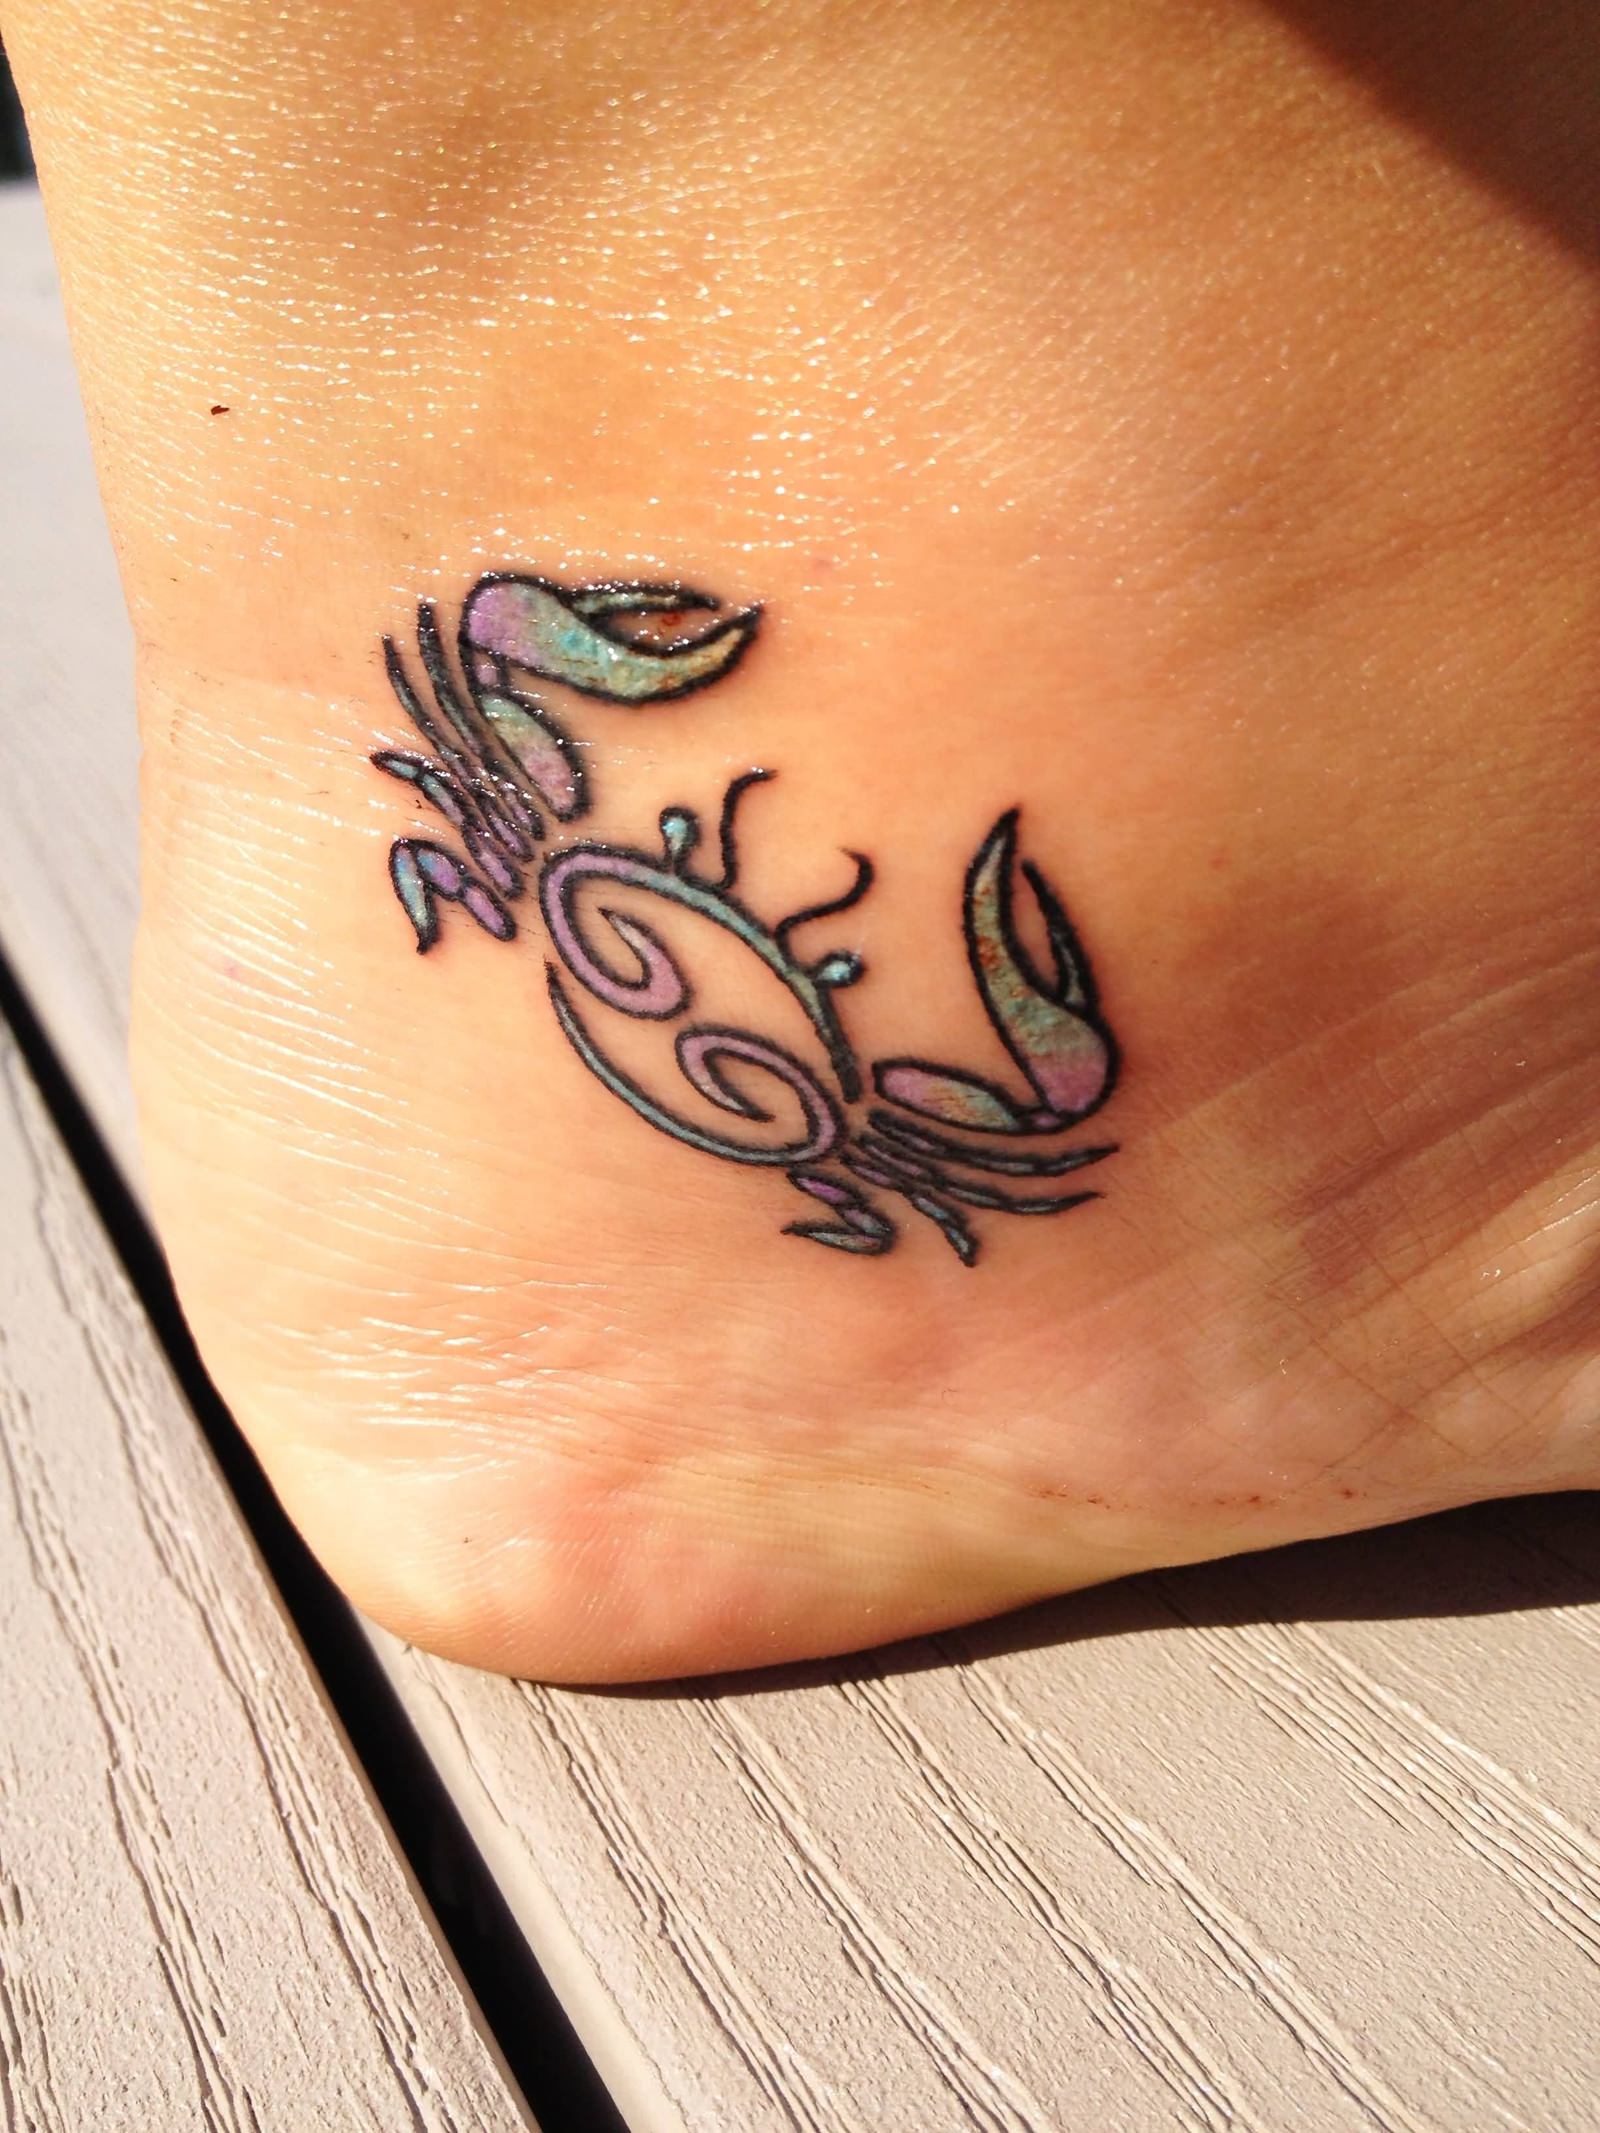 Tatuagem feita no pé do signo de câncer